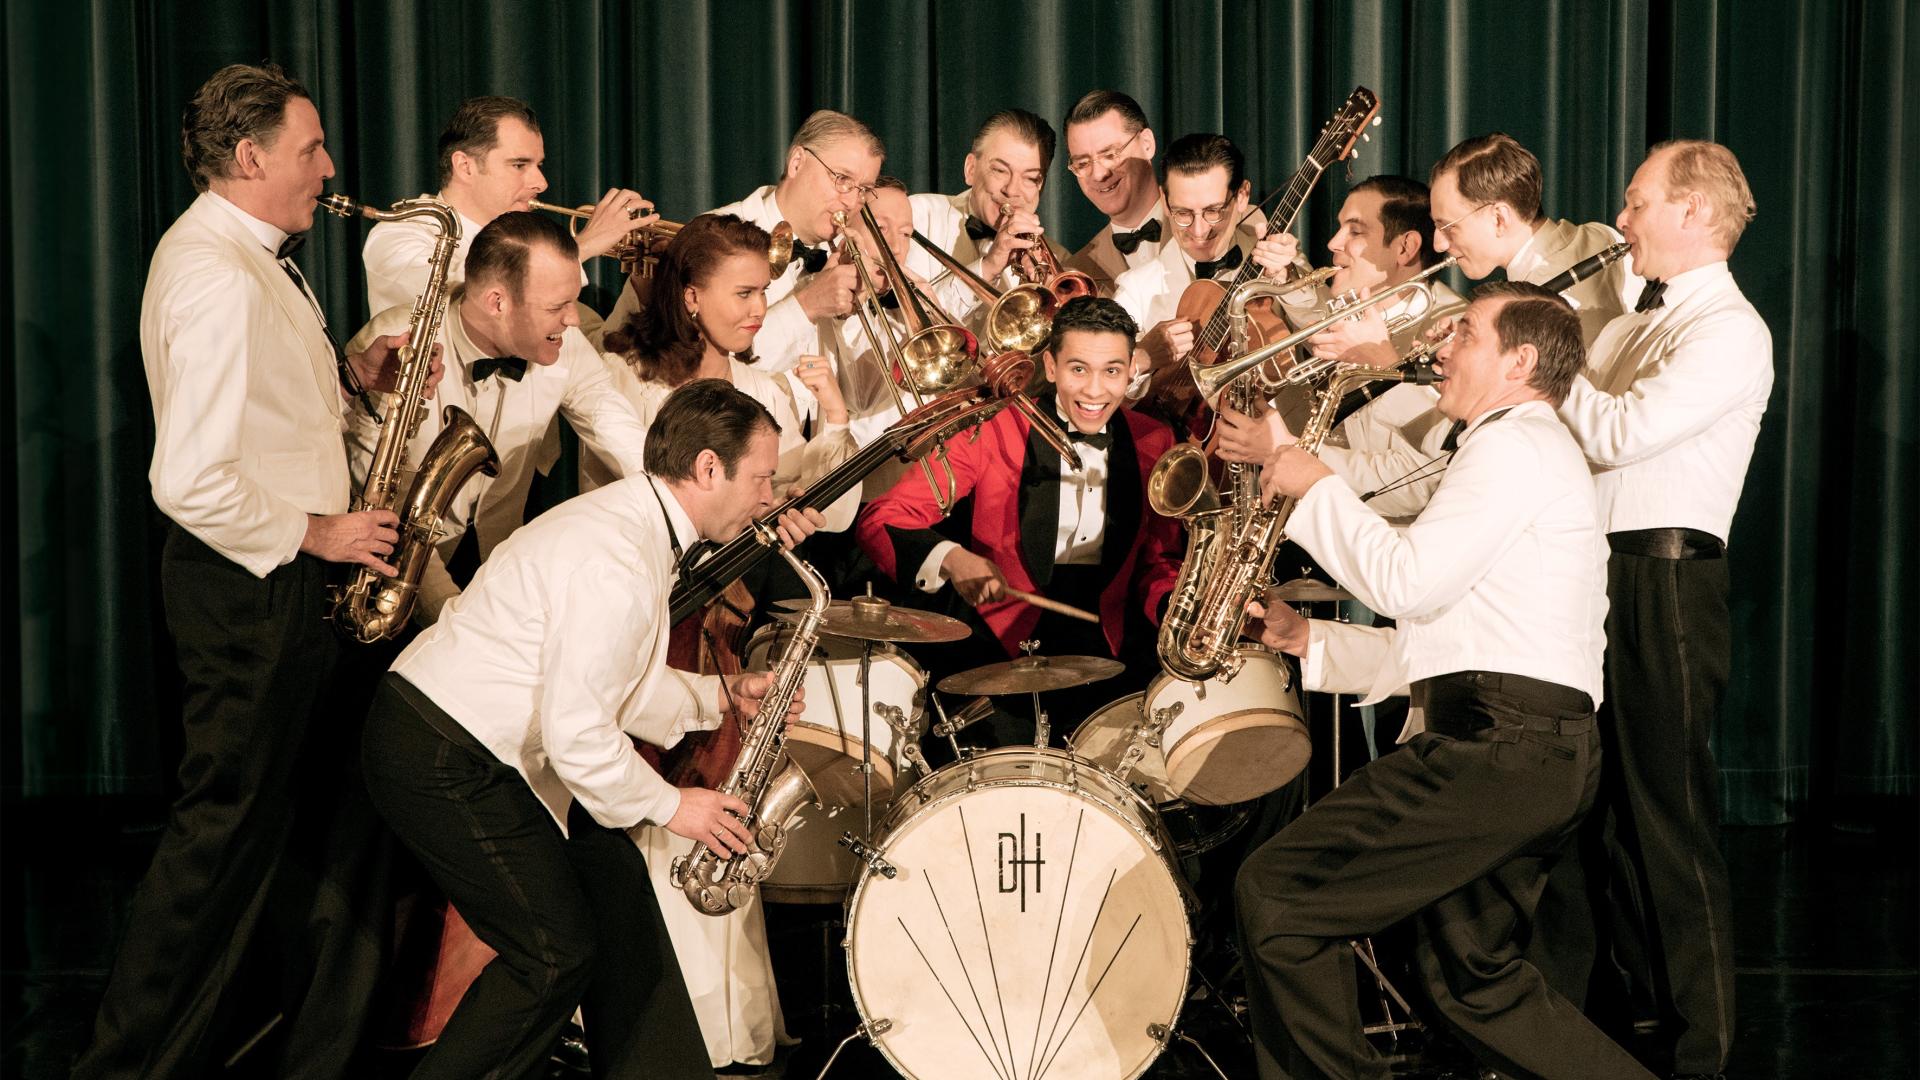 Man sieht die Mitglieder des Swing Dance Orchestras, wie sie mit ihren Instrumenten rund um einen Schlagzeuger stehen. Alle tragen Anzüge im Stil der 20er-Jahre. 